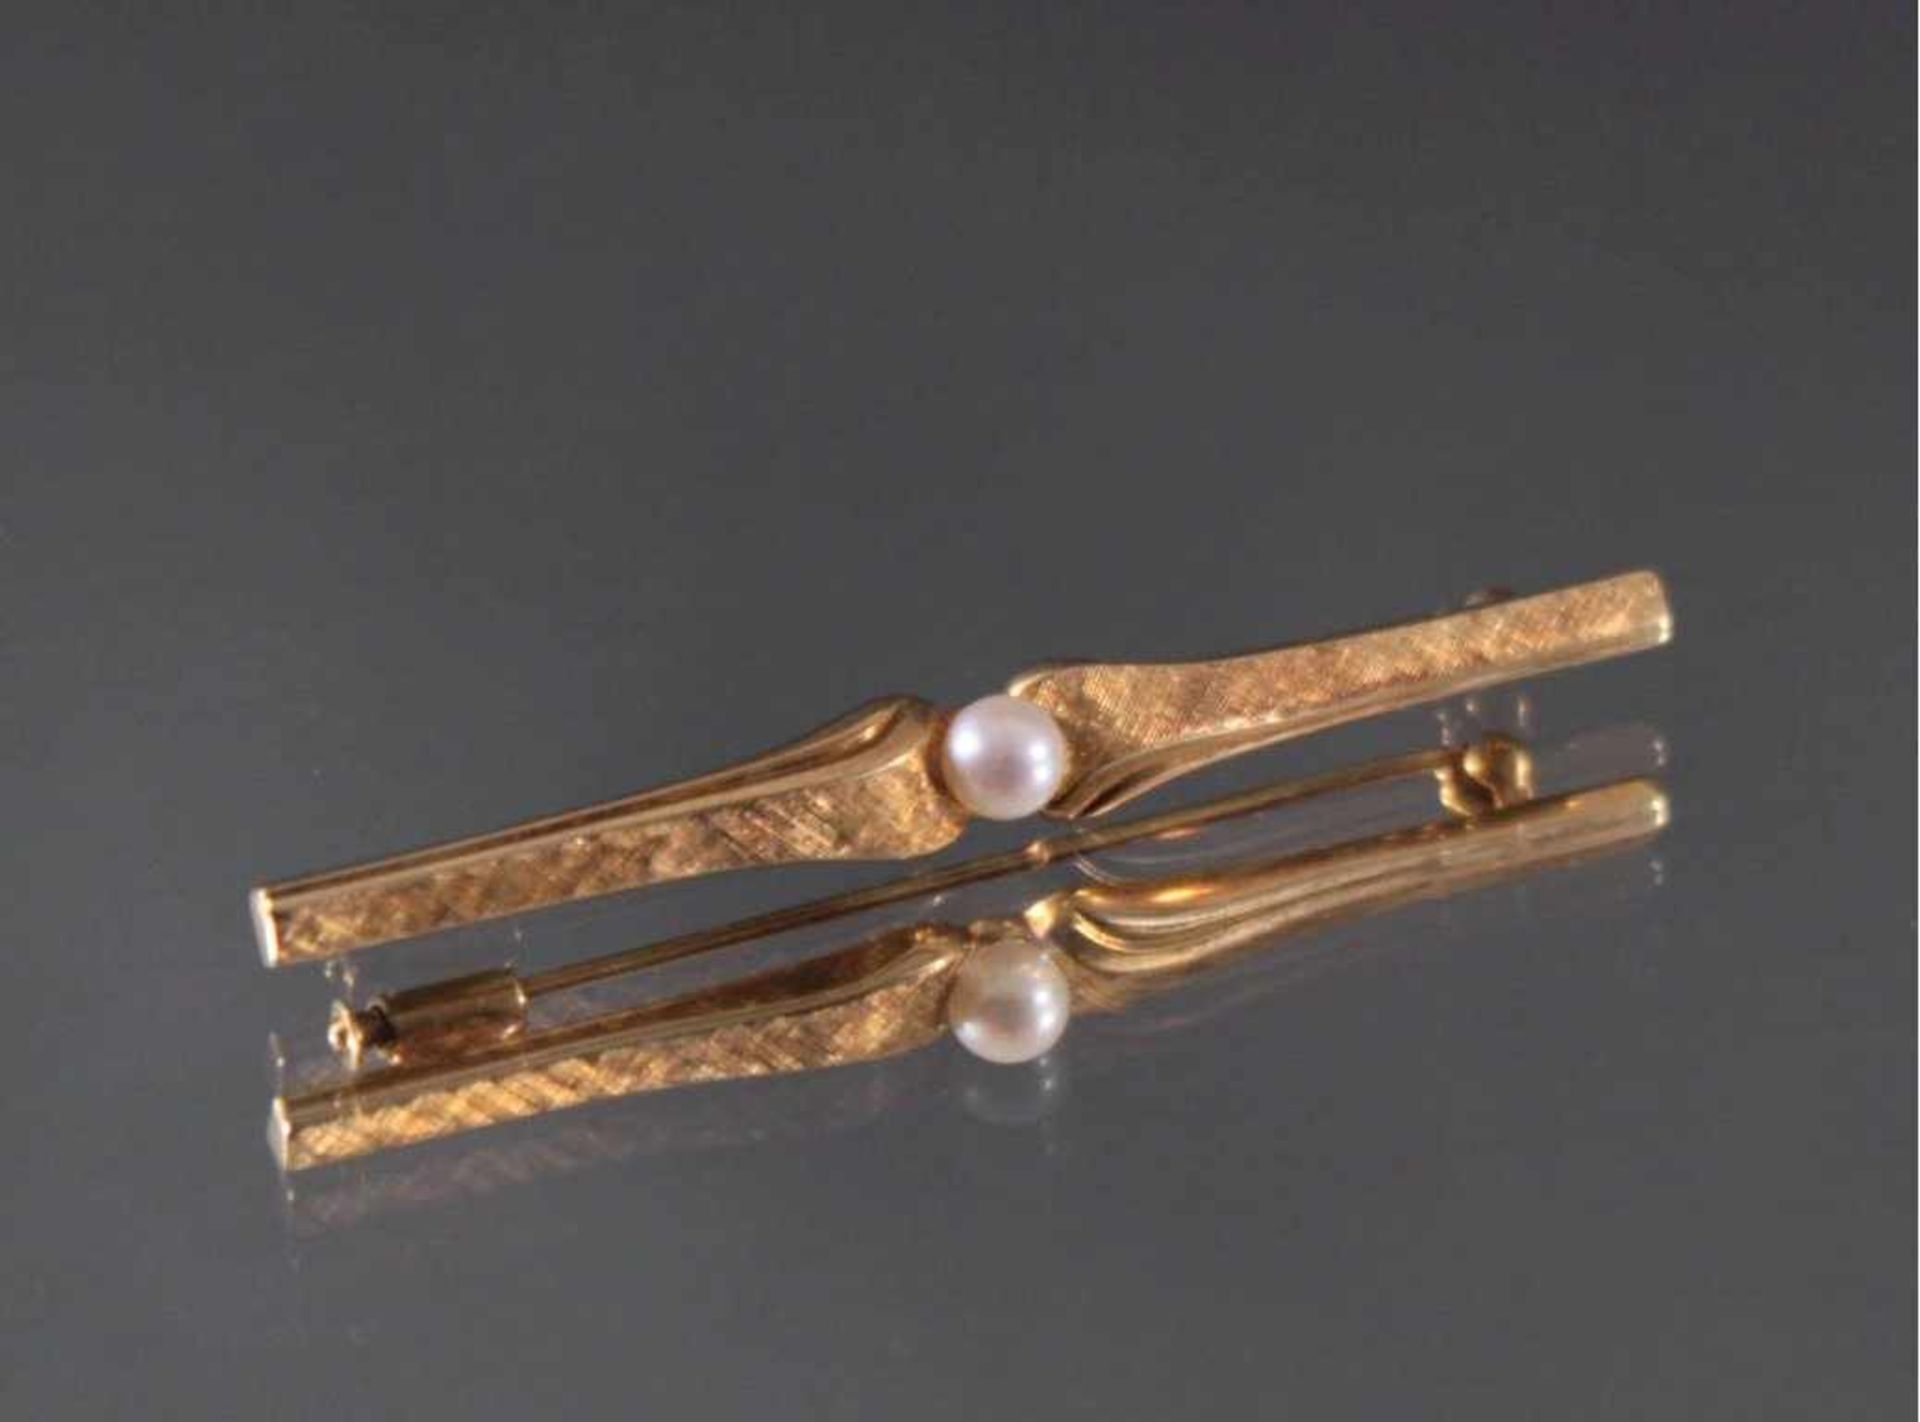 Stabbrosche aus 14 Karat Gelbgold mit PerleZentral gefasste Perle, punziert 585, ca. Länge 6 cm, 3,4